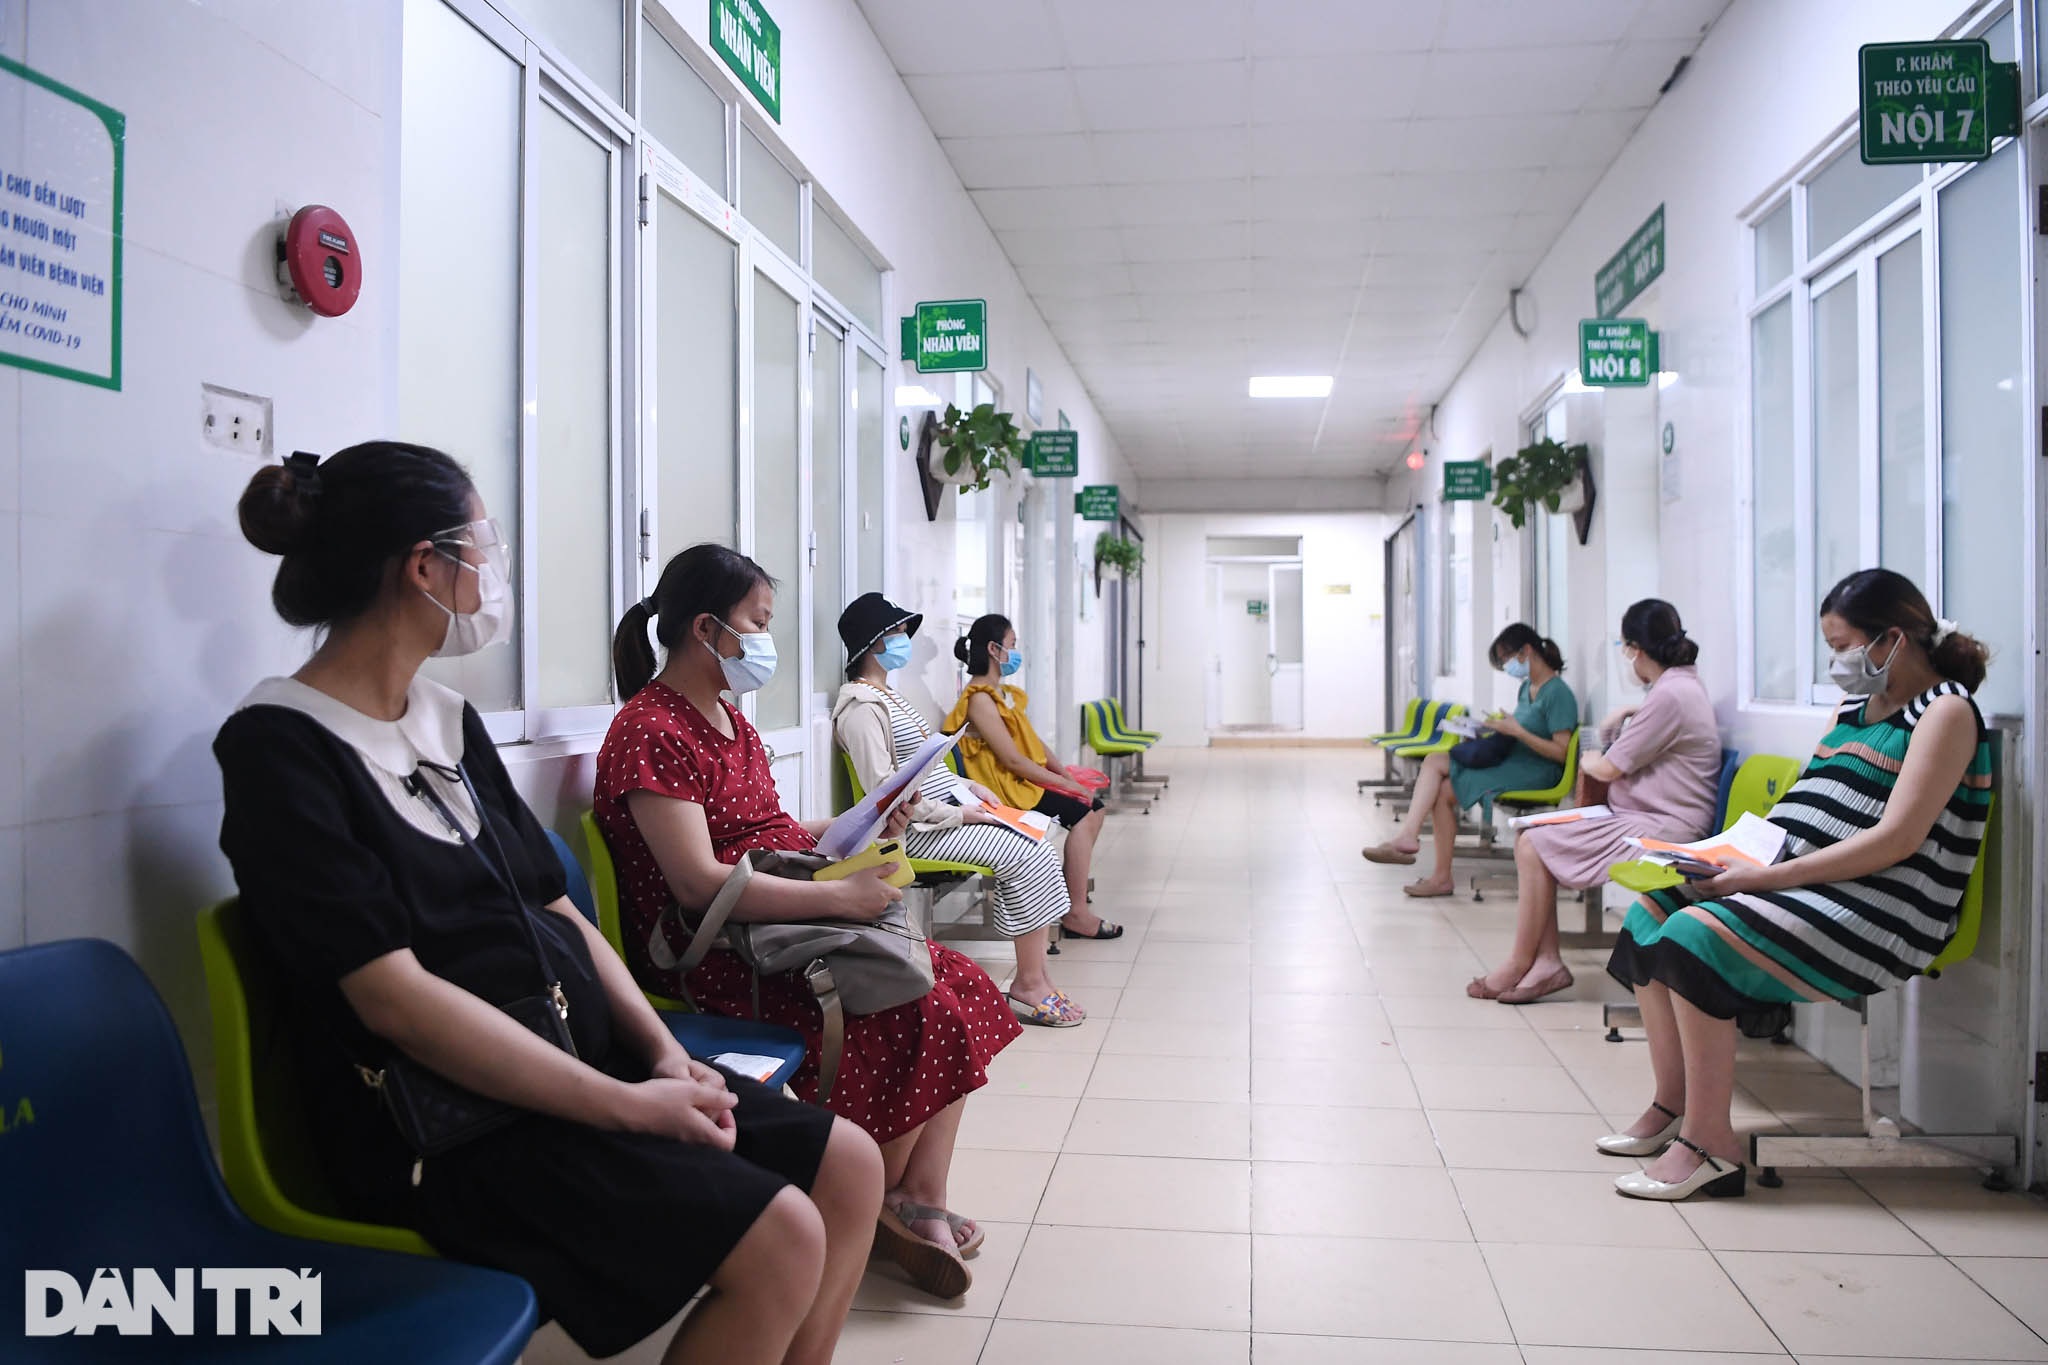 Quy trình tiêm vắc xin ngừa Covid-19 cho hơn 1.000 thai phụ ở Hà Nội - 10